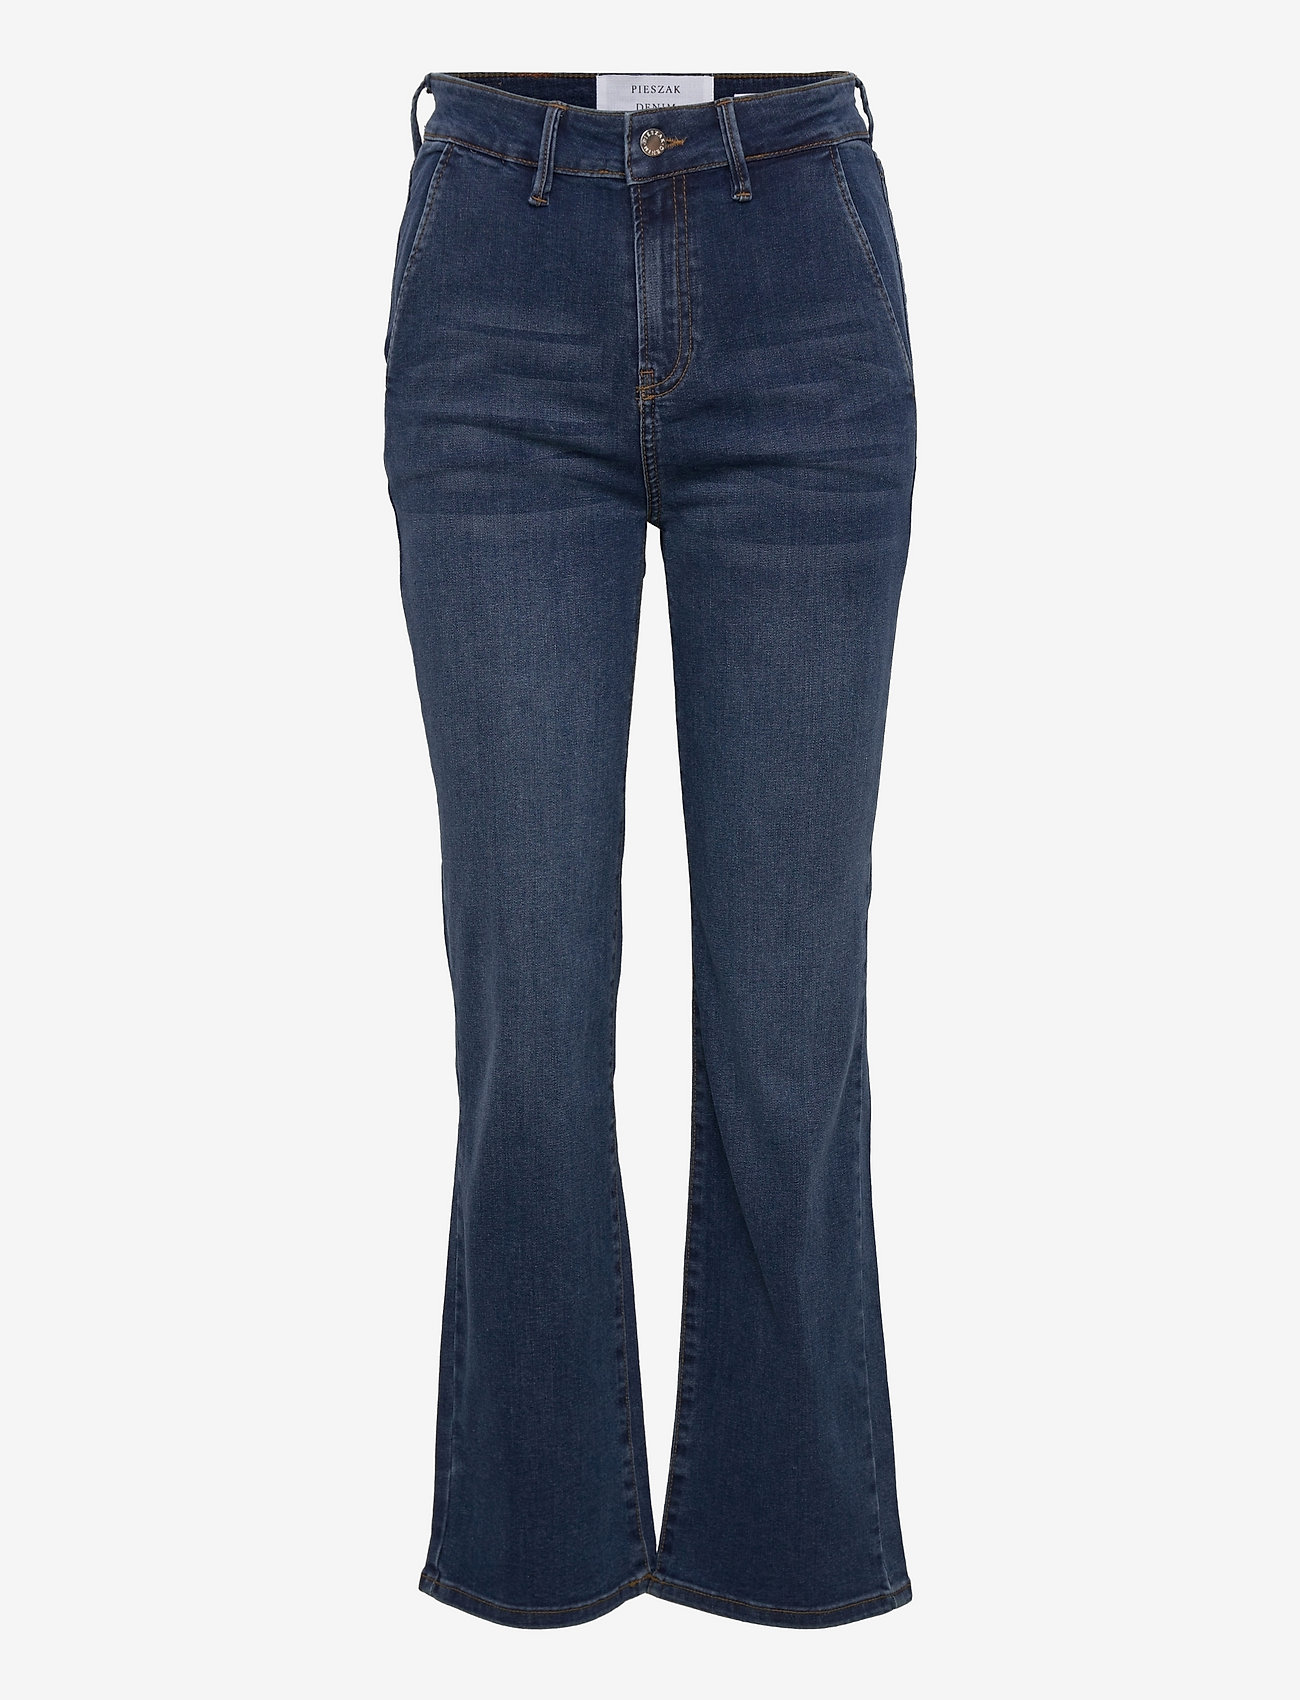 Pieszak - Jenora french jeans wash Malcesine - nuo kelių platėjantys džinsai - denim blue - 0